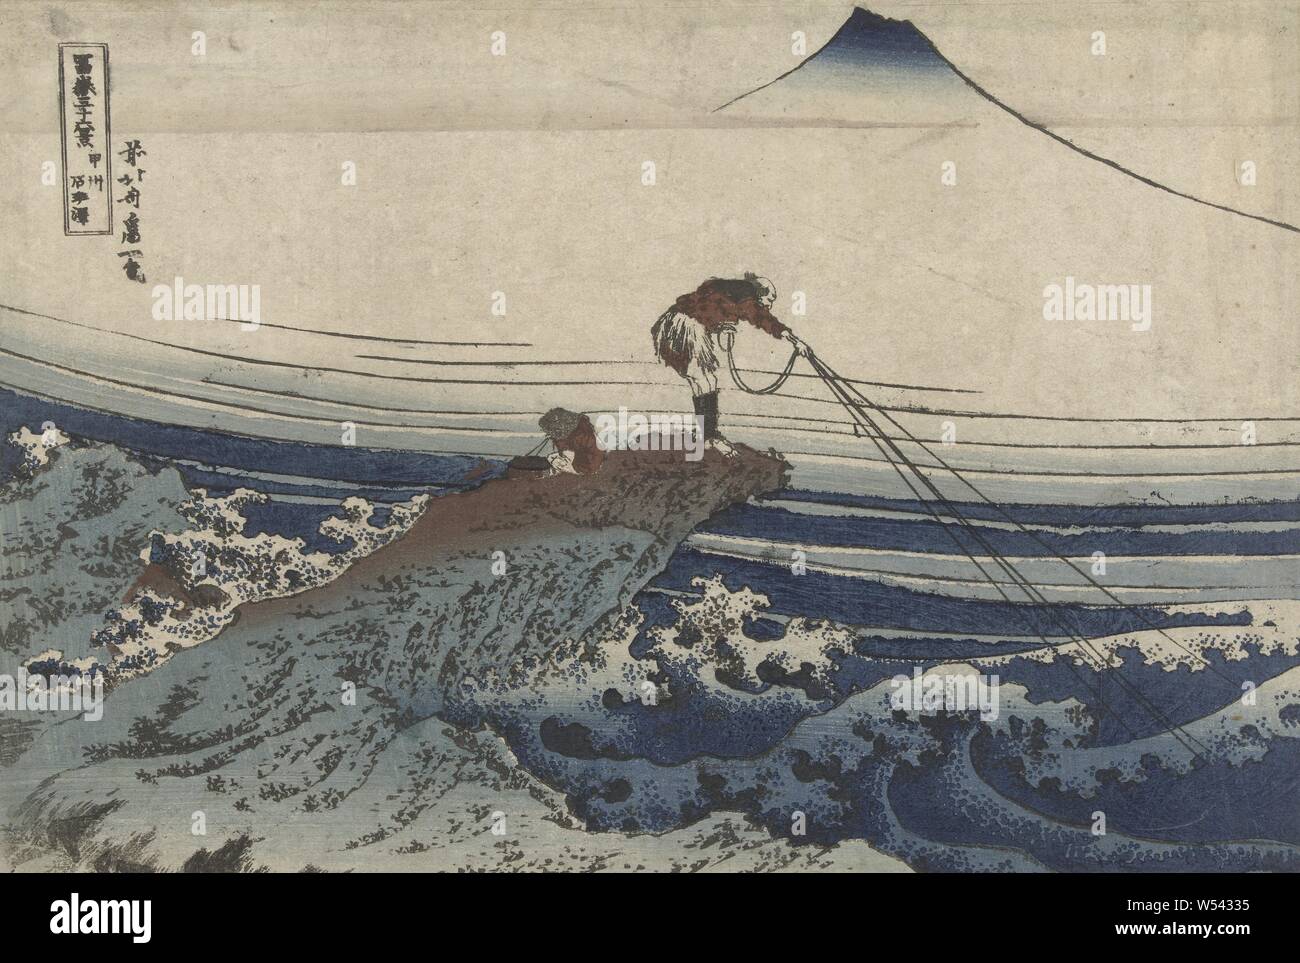 In Kai Koshu kajikasawa Provinz Kajikasawa (Titel auf Objekt) 36 Blick auf Mount Fuji (Titel der Serie) Fuji sanjurokkei (Titel der Serie auf Objekt), ein Fischer auf, vor einer turbulenten Meer hängen an Rock, ein Junge, der neben ihm saß, Mount Fuji im Hintergrund steigen über Nebel Banken., Fuji, der Berg, Katsushika Hokusai (auf Objekt erwähnt), 1829-1833, Papier, Farbholzschnitt, H 249 mm x B 368 mm Stockfoto